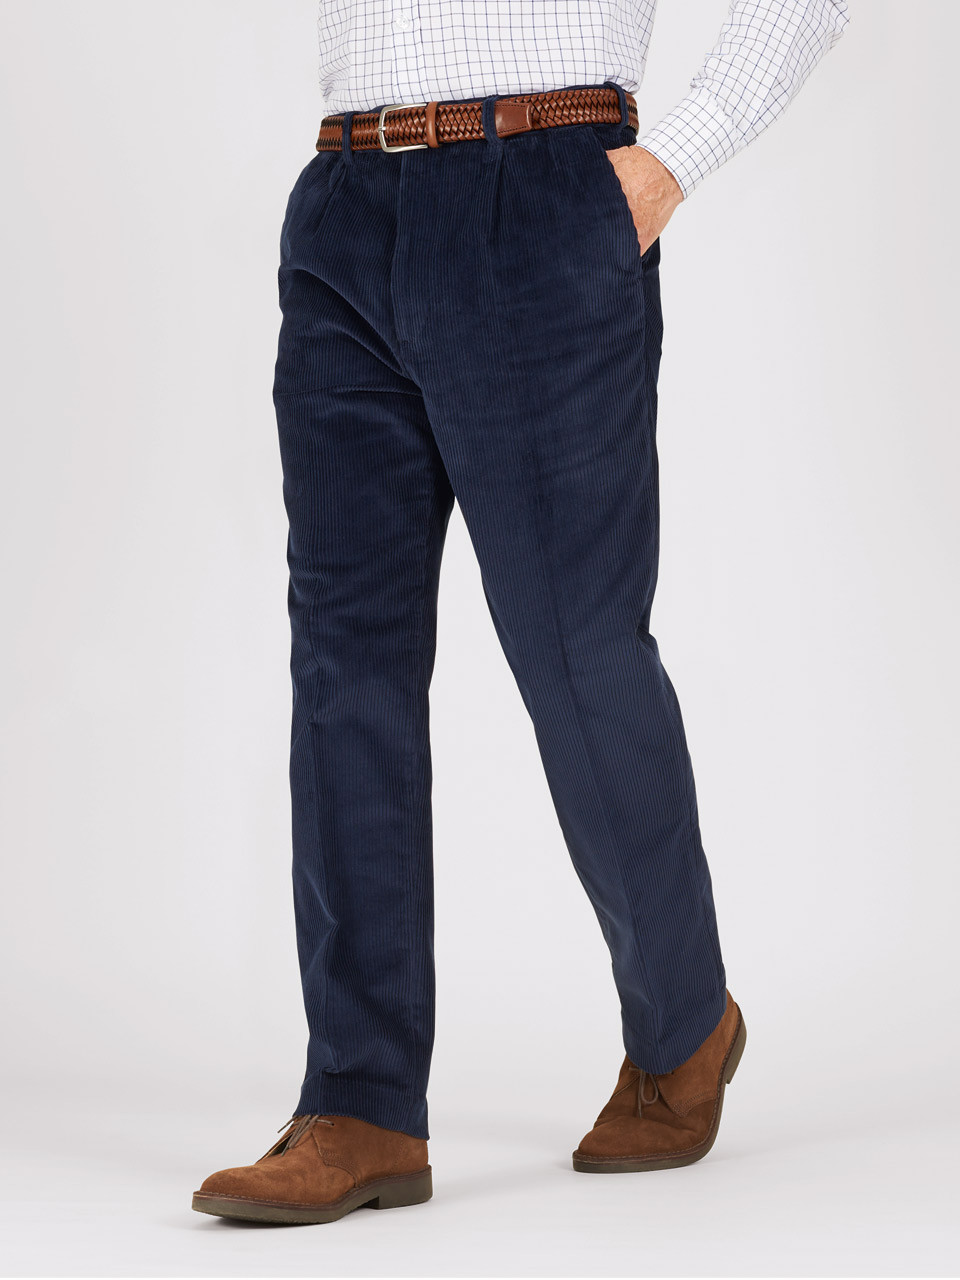 Blue Track Pant for Men - Solid & Cotton Blend Regular Fit | JadeBlue